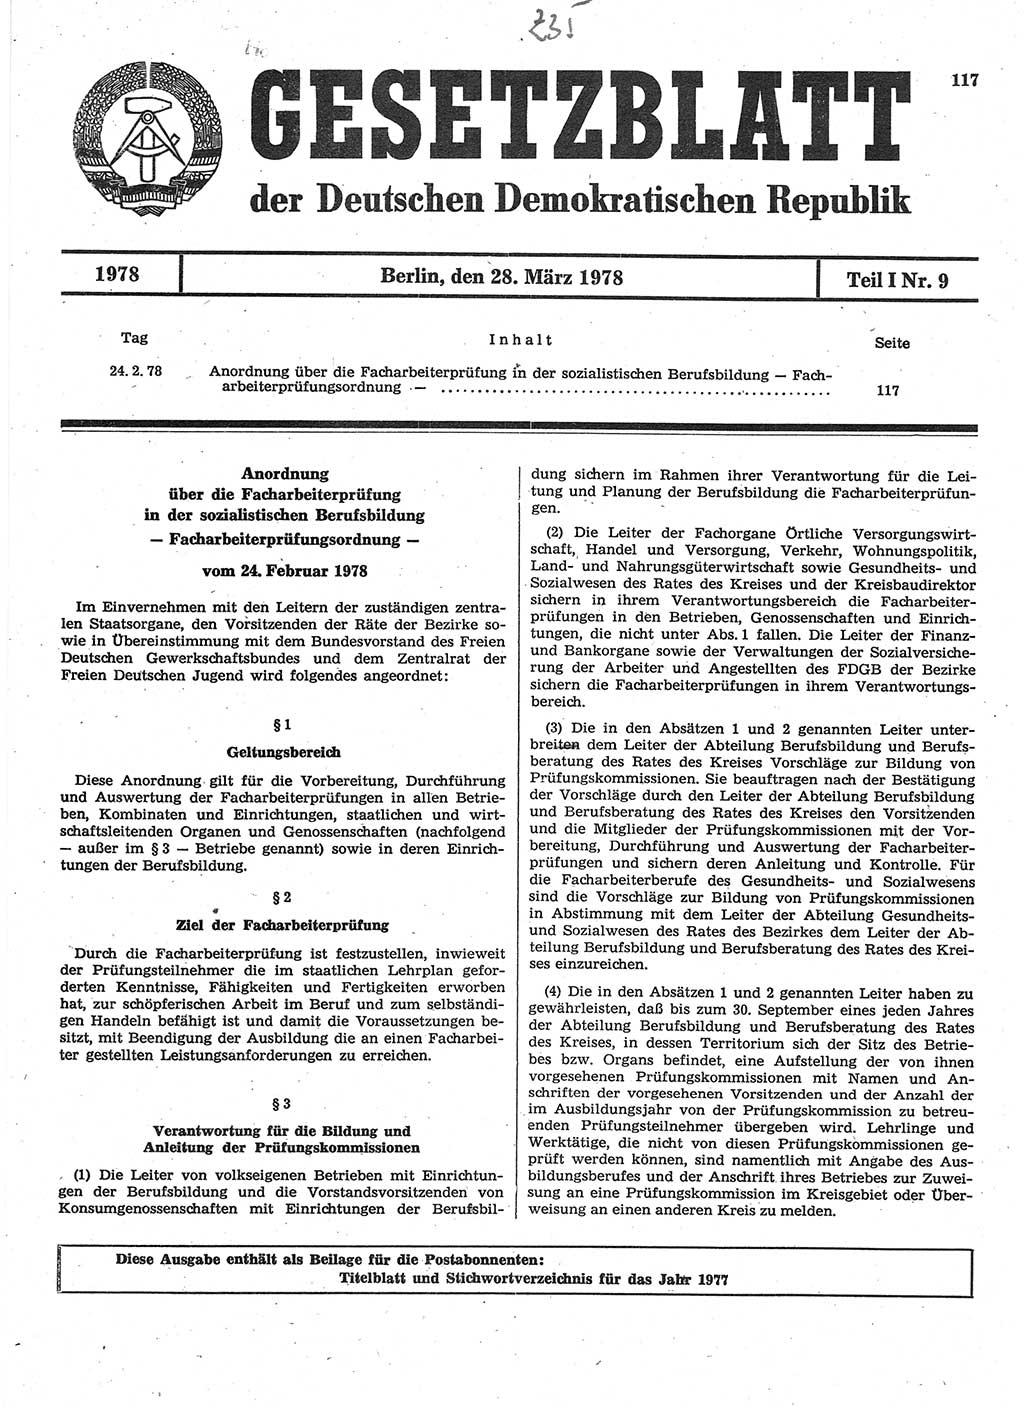 Gesetzblatt (GBl.) der Deutschen Demokratischen Republik (DDR) Teil Ⅰ 1978, Seite 117 (GBl. DDR Ⅰ 1978, S. 117)